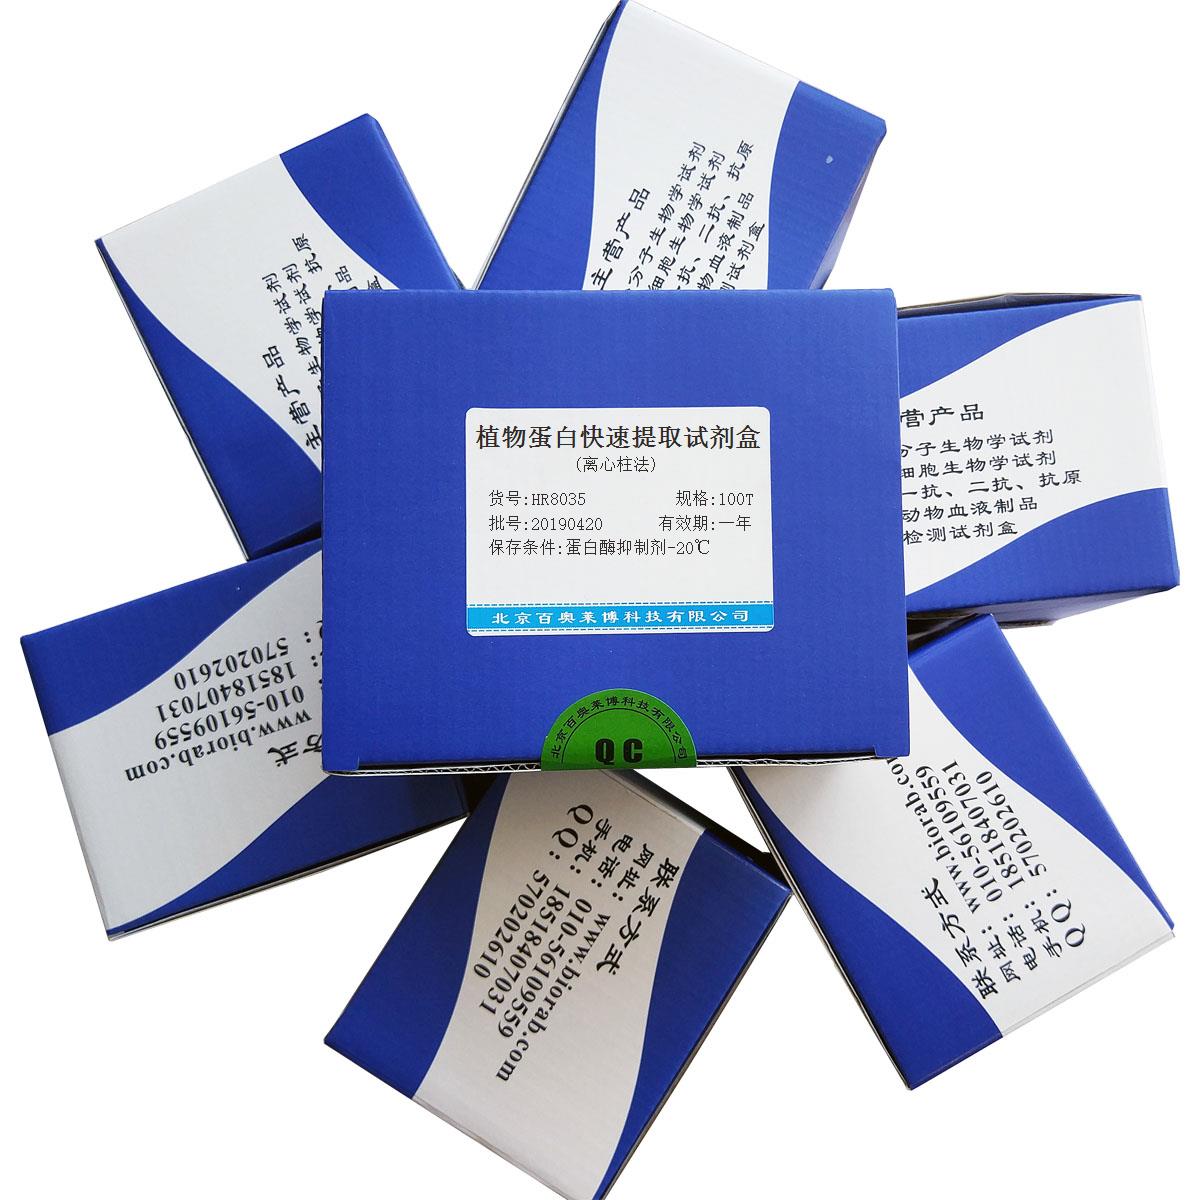 植物蛋白快速提取试剂盒(离心柱法)北京品牌